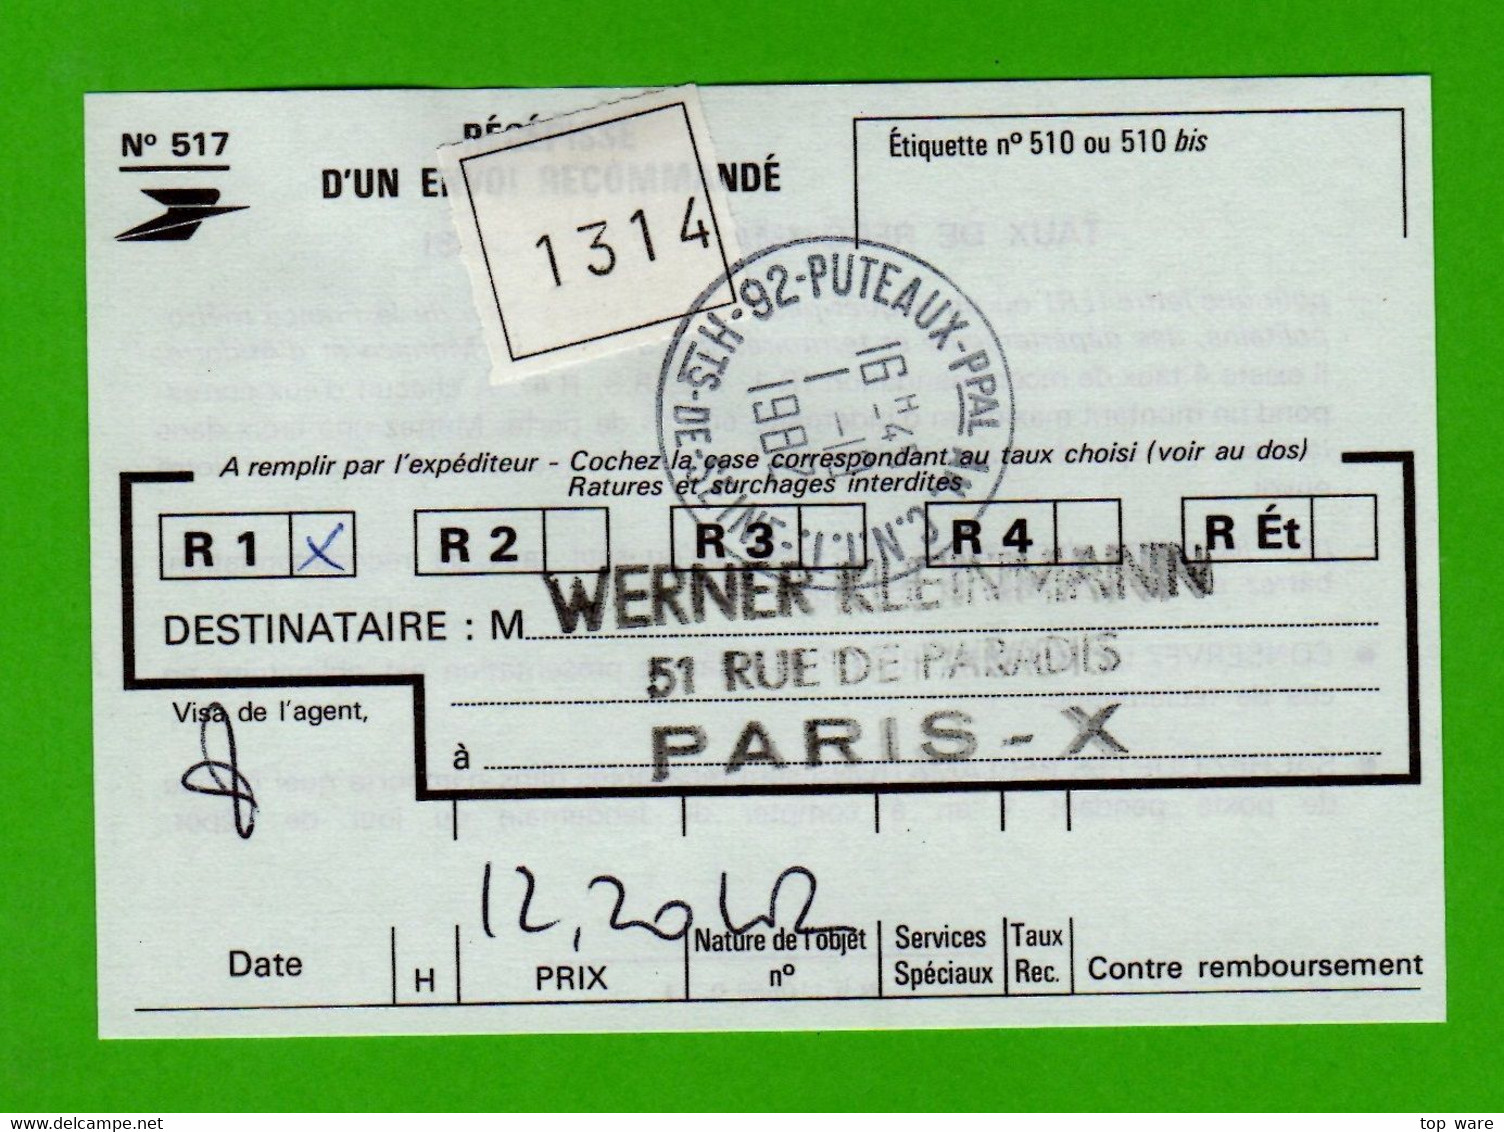 France ATM Vignette LSA 92954 / Michel 5.2 / Satz Auf R-LDC / SICOB 1982 / Distributeurs Automatenmarken - 1981-84 LS & LSA Prototipos